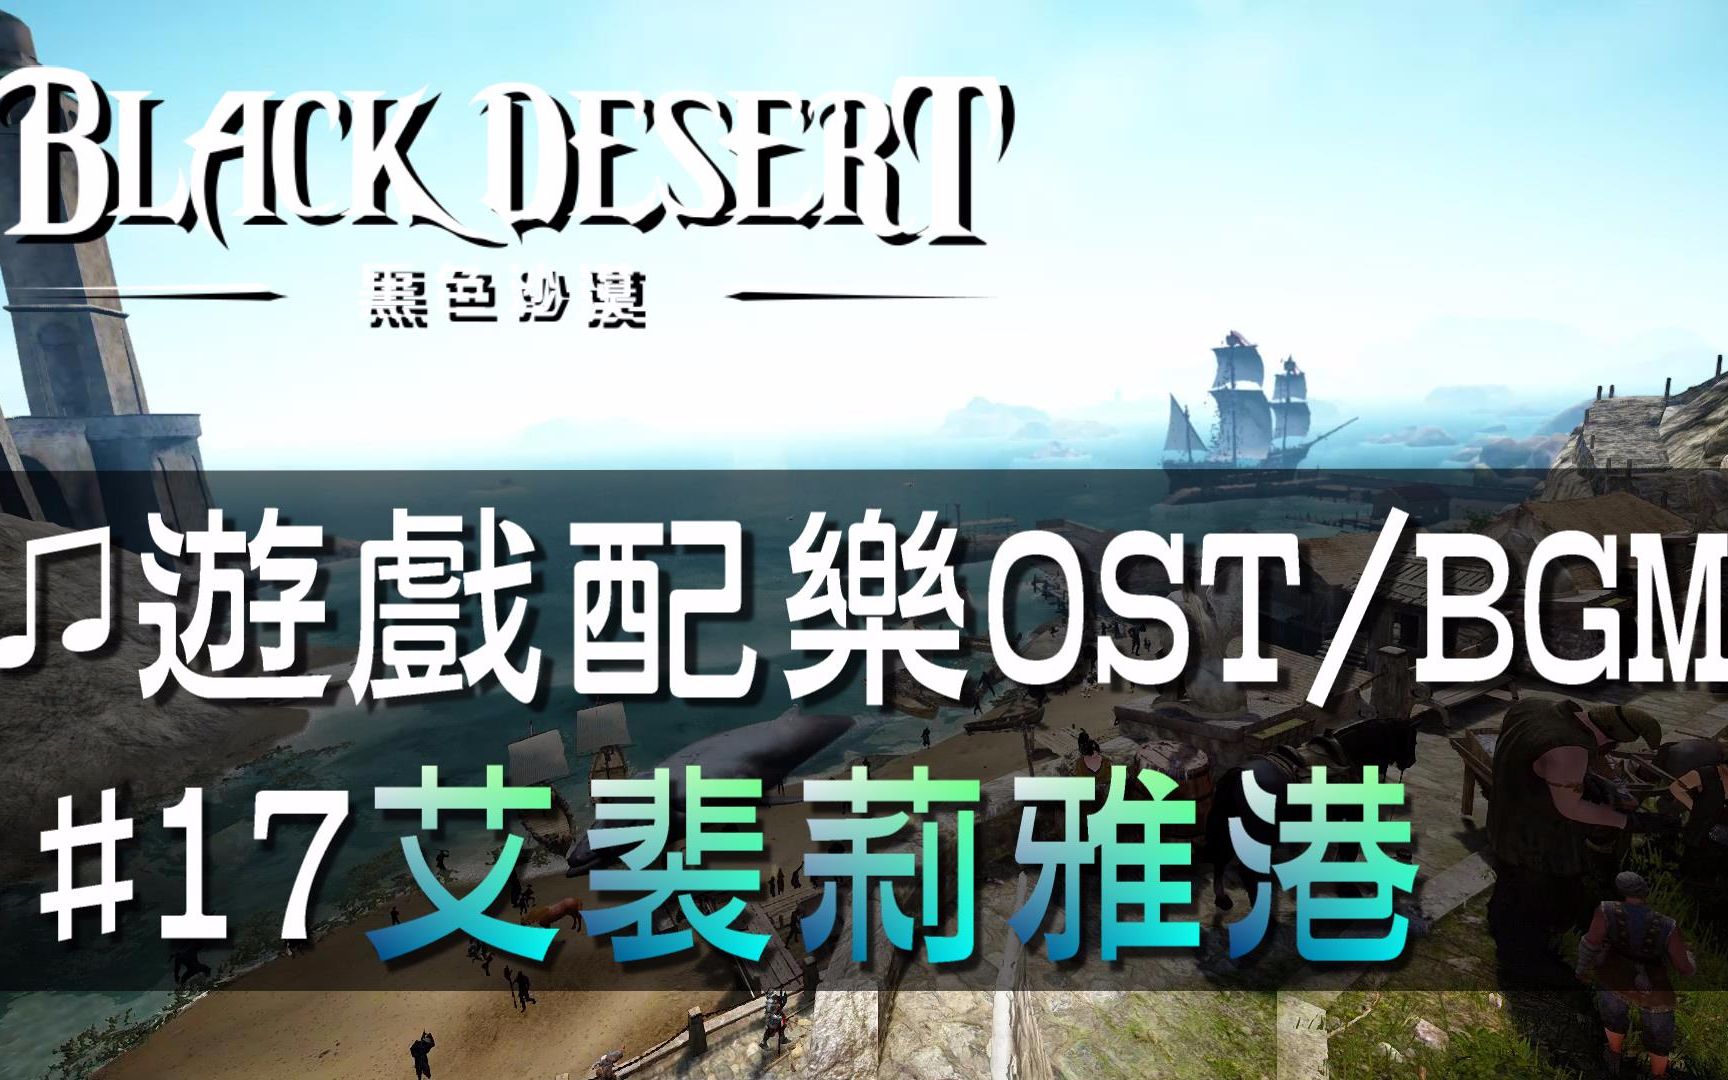 【黑色沙漠♫音樂】#17艾裴莉雅港｜Black Desert OST/BGM/soundtrack ♫ - Epheri